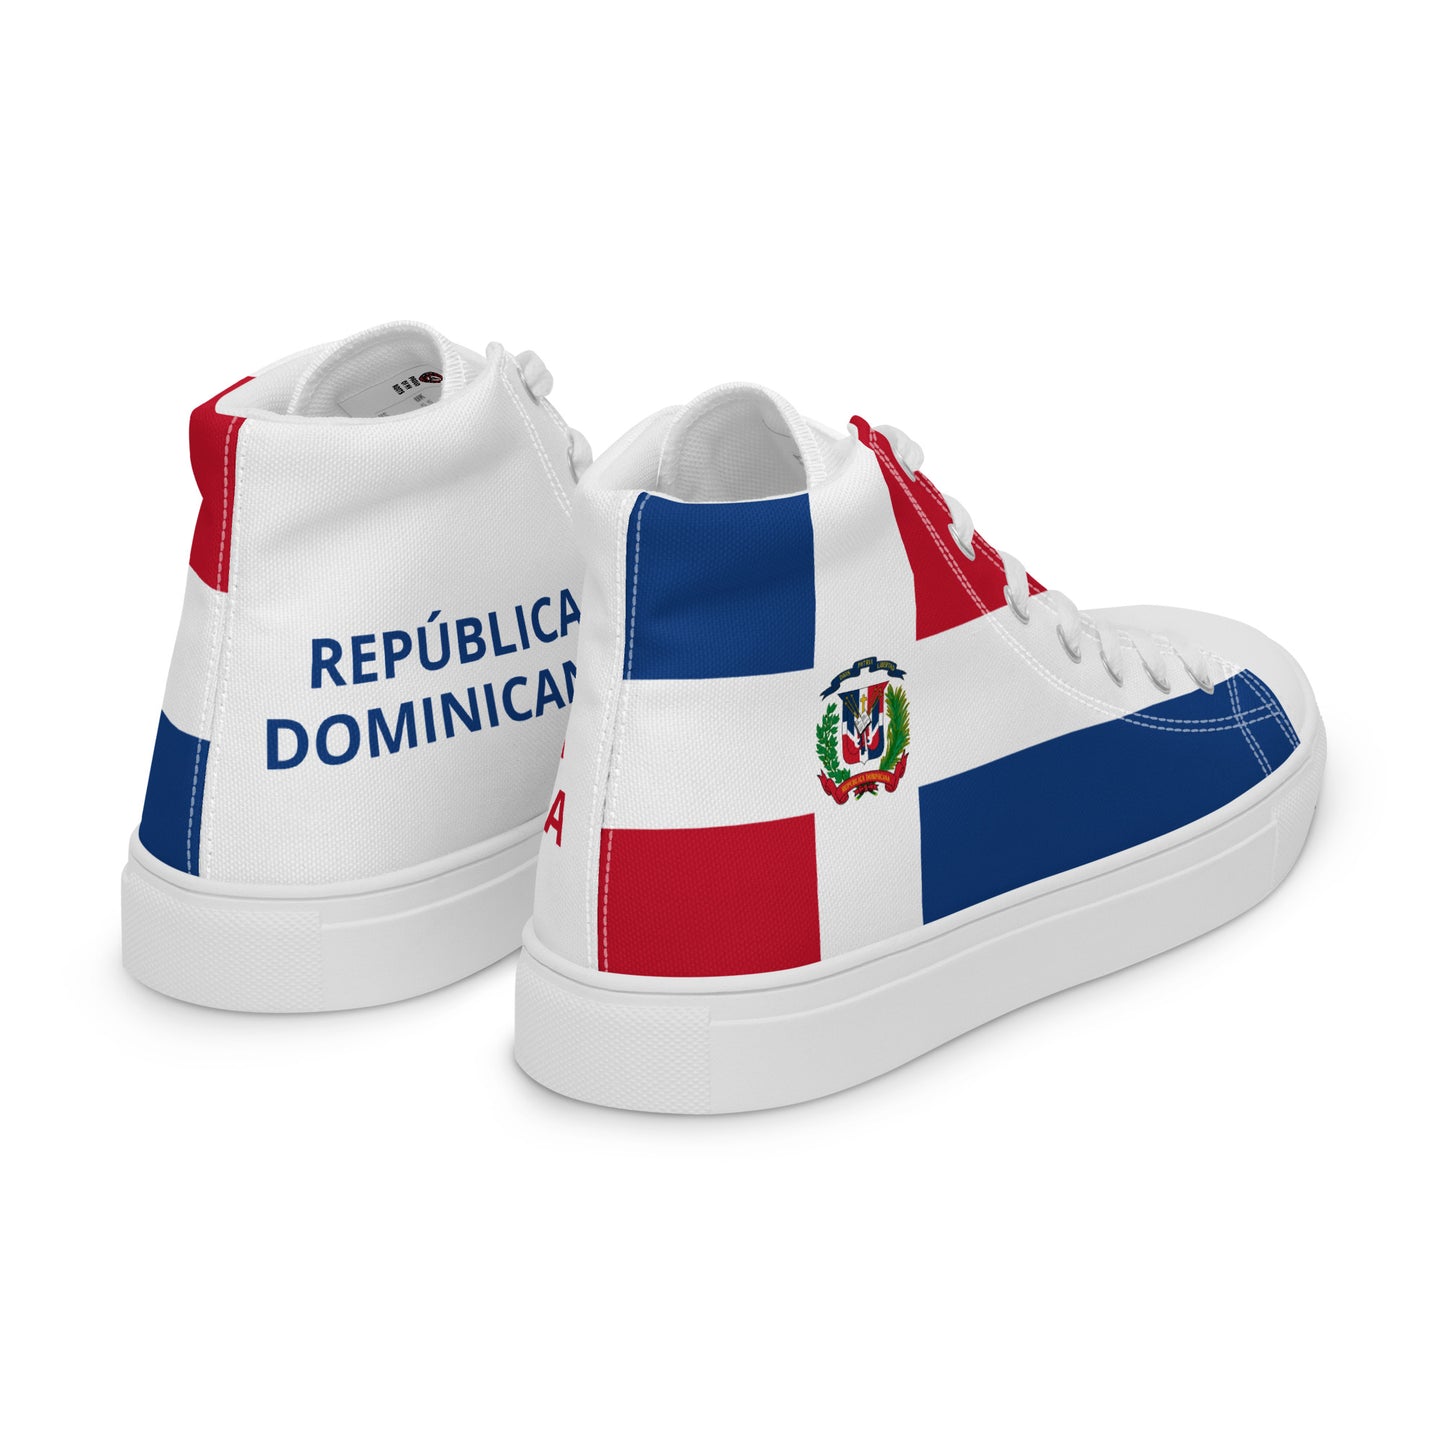 República Dominicana - Men - Bandera - High top shoes